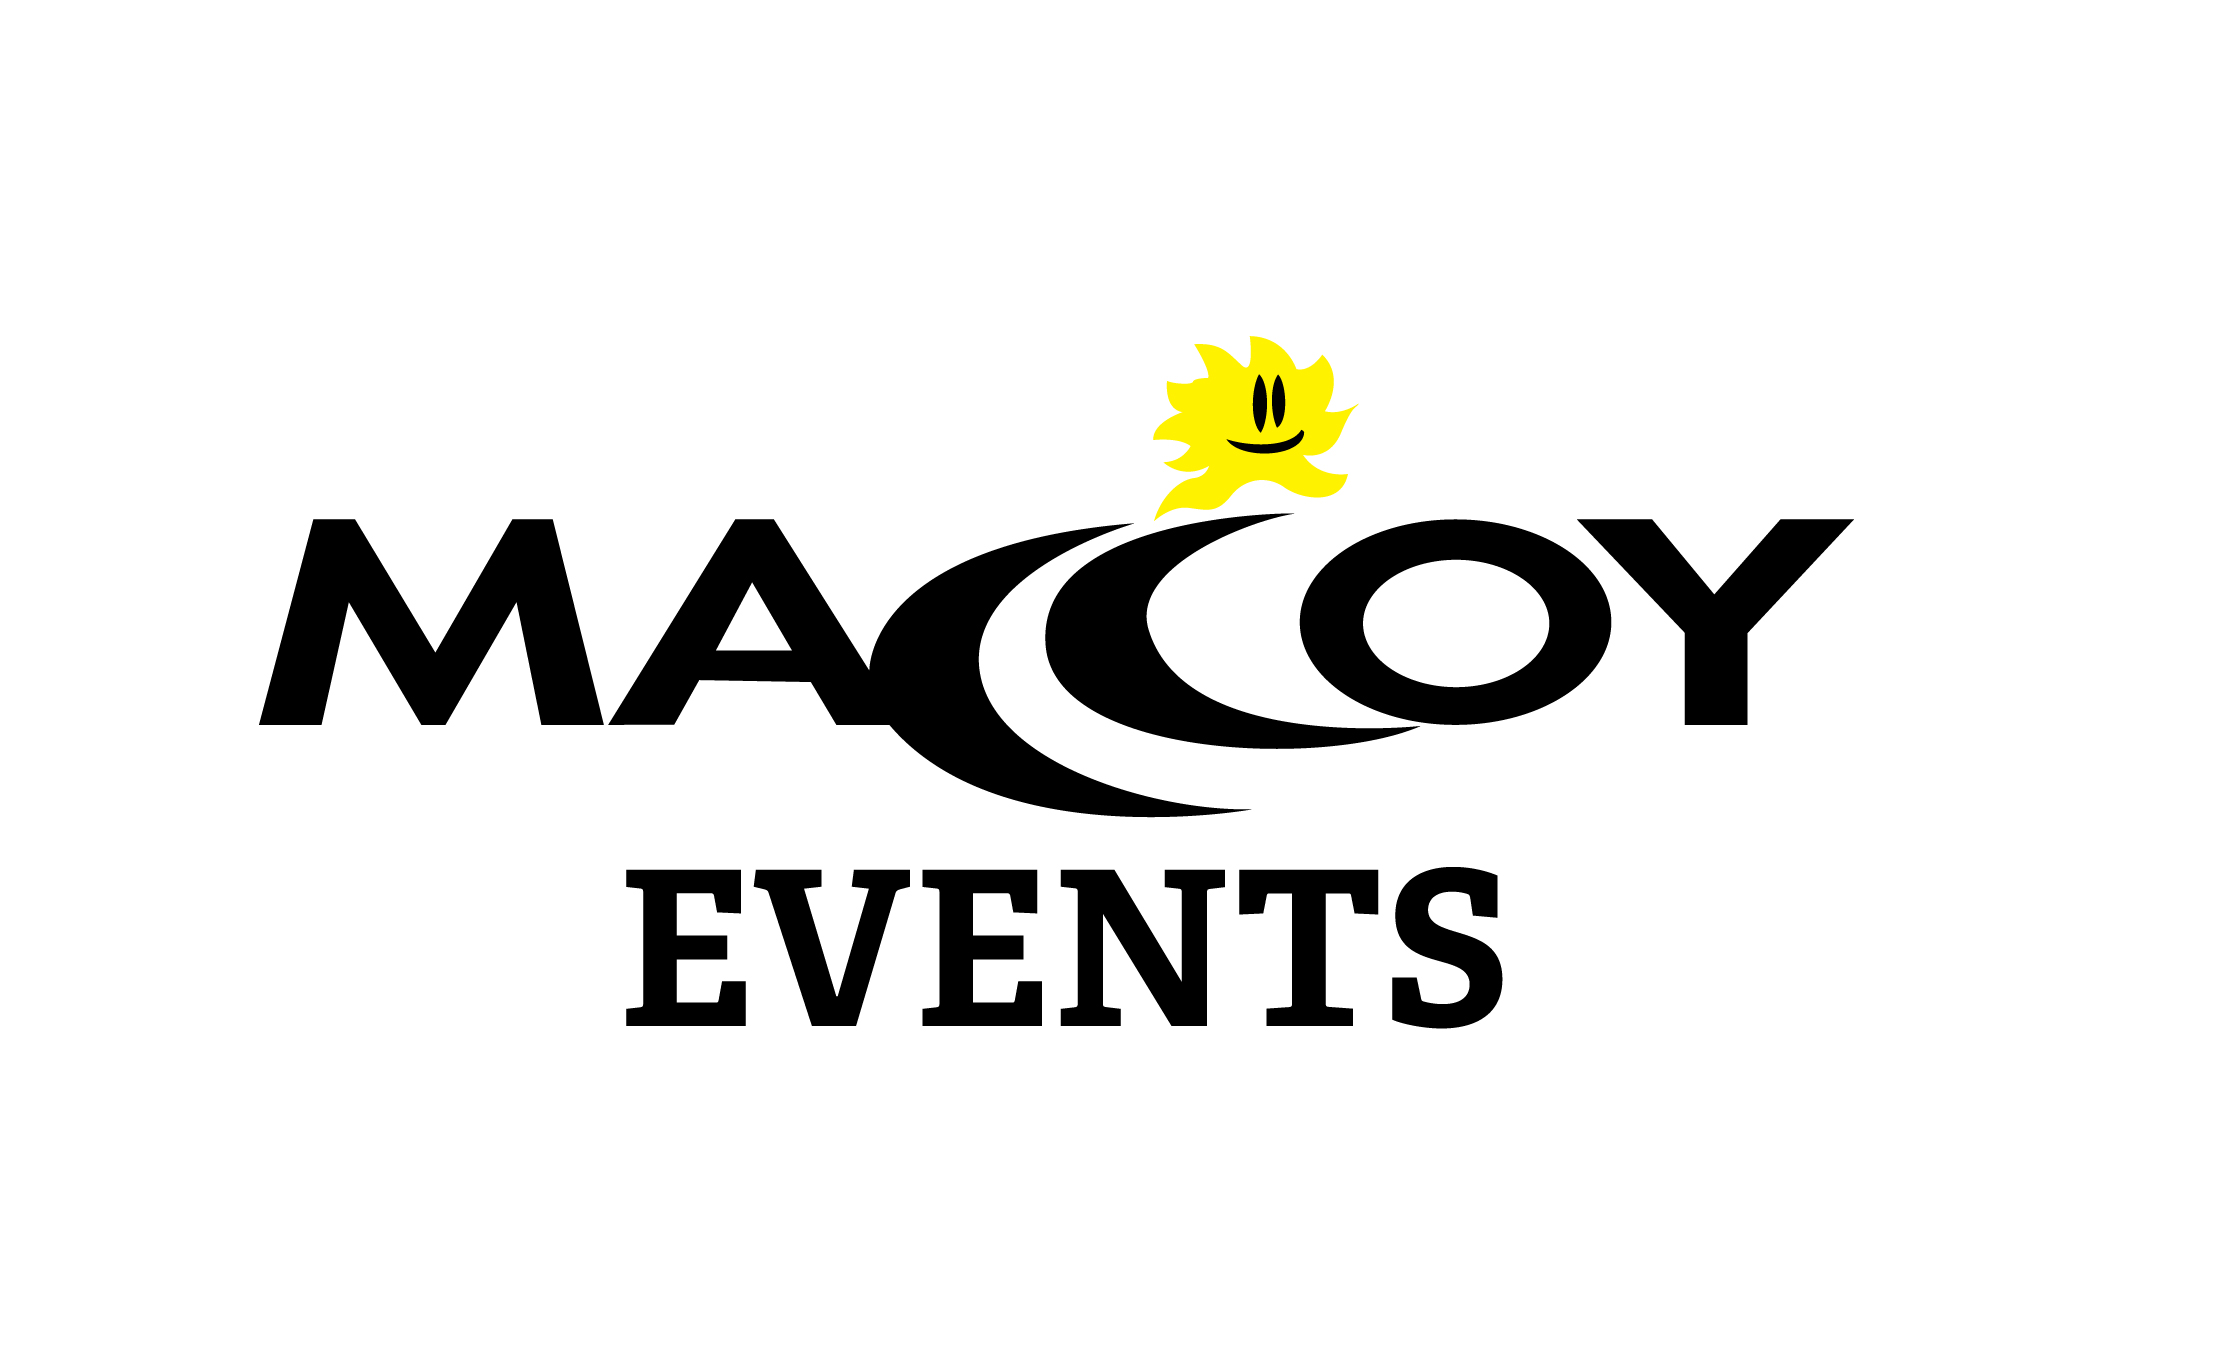 Maccoy Events